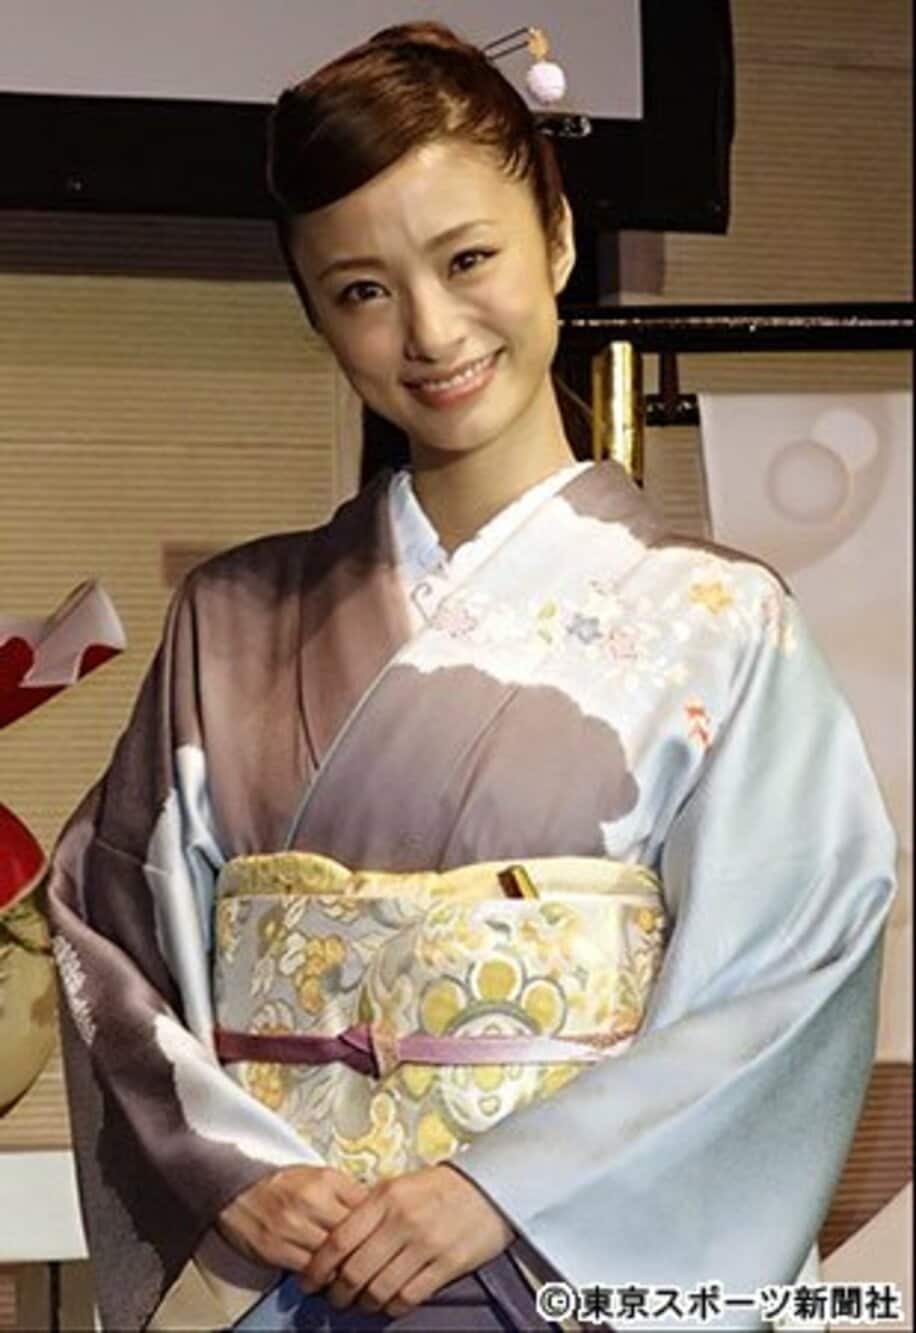 京都・二条城で行われる芸術展の発表会見に出席した上戸